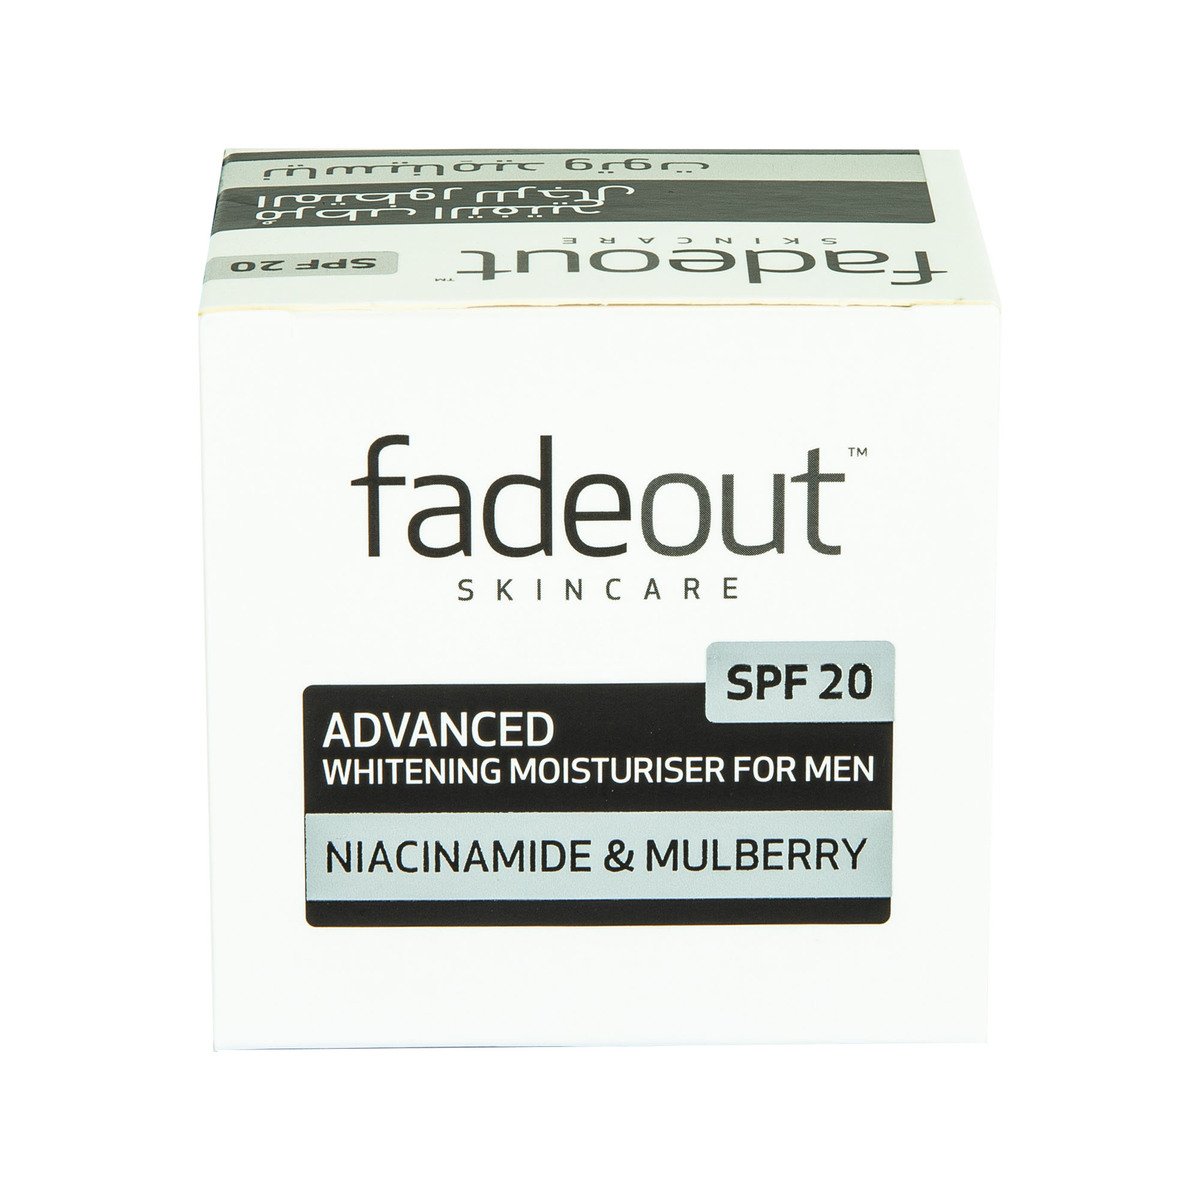 Fade Out Advanced Whitening Moisturiser For Men 50 ml